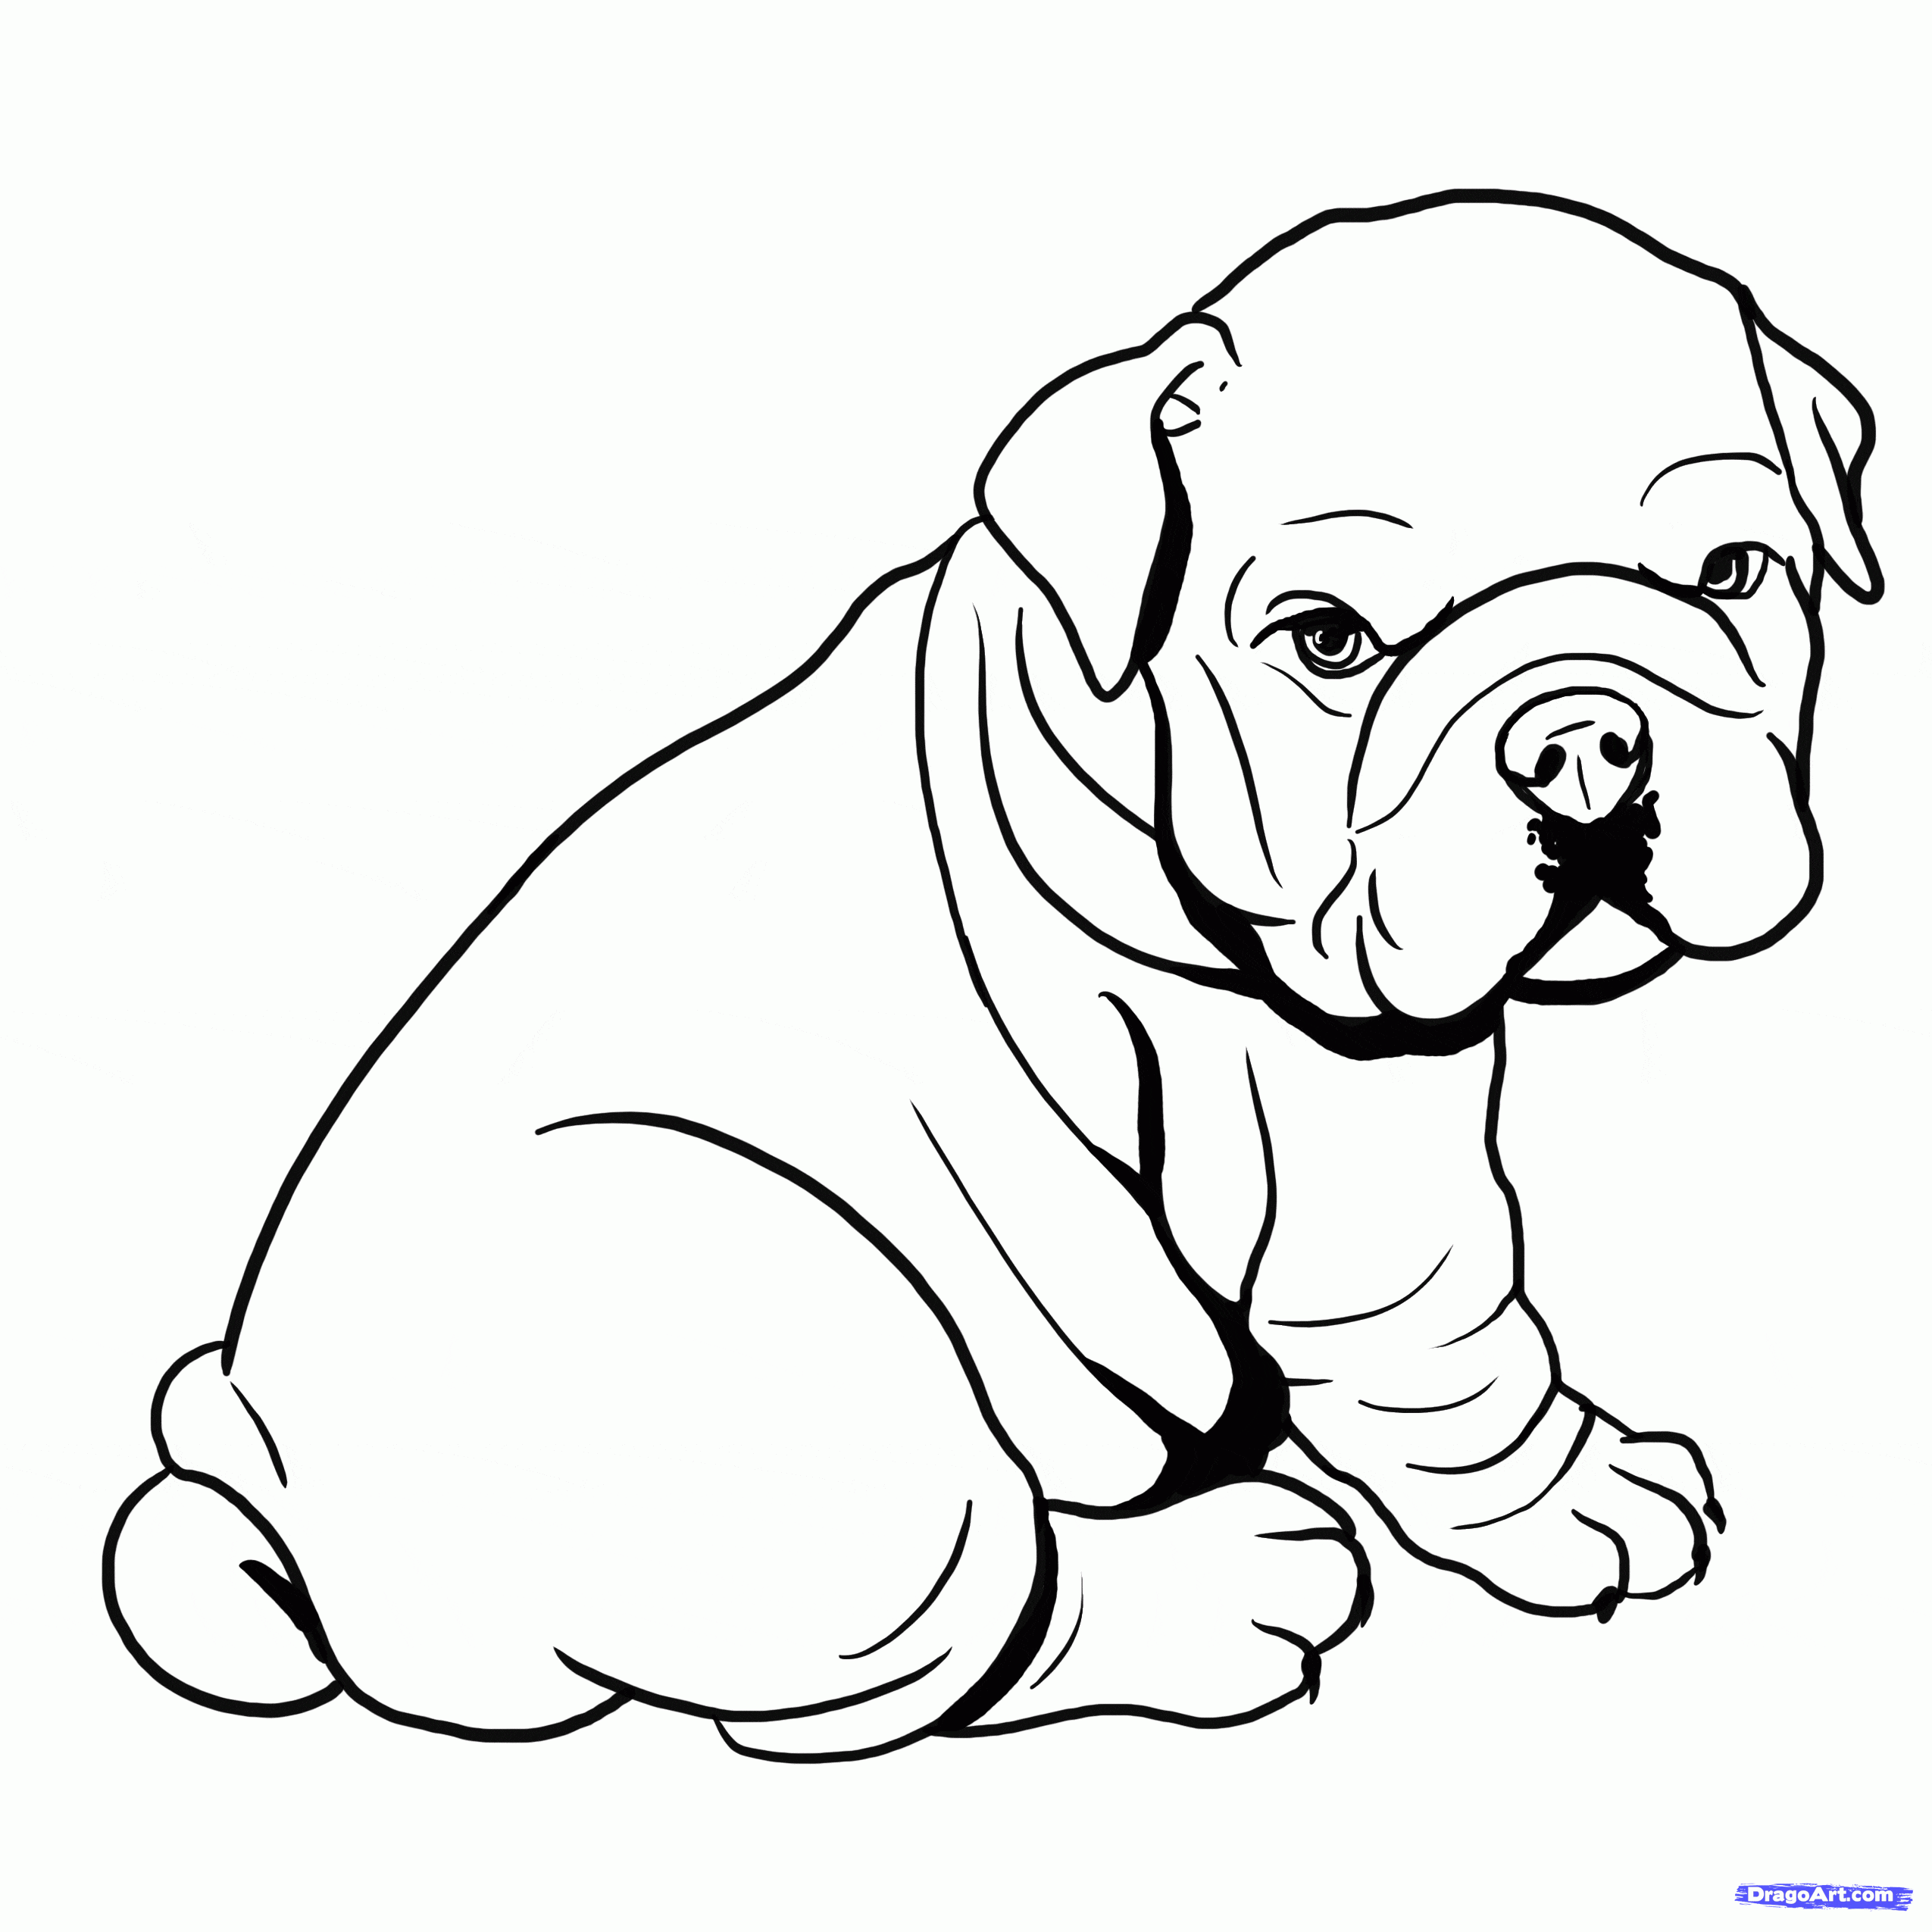 Bulldog Image Coloring Page